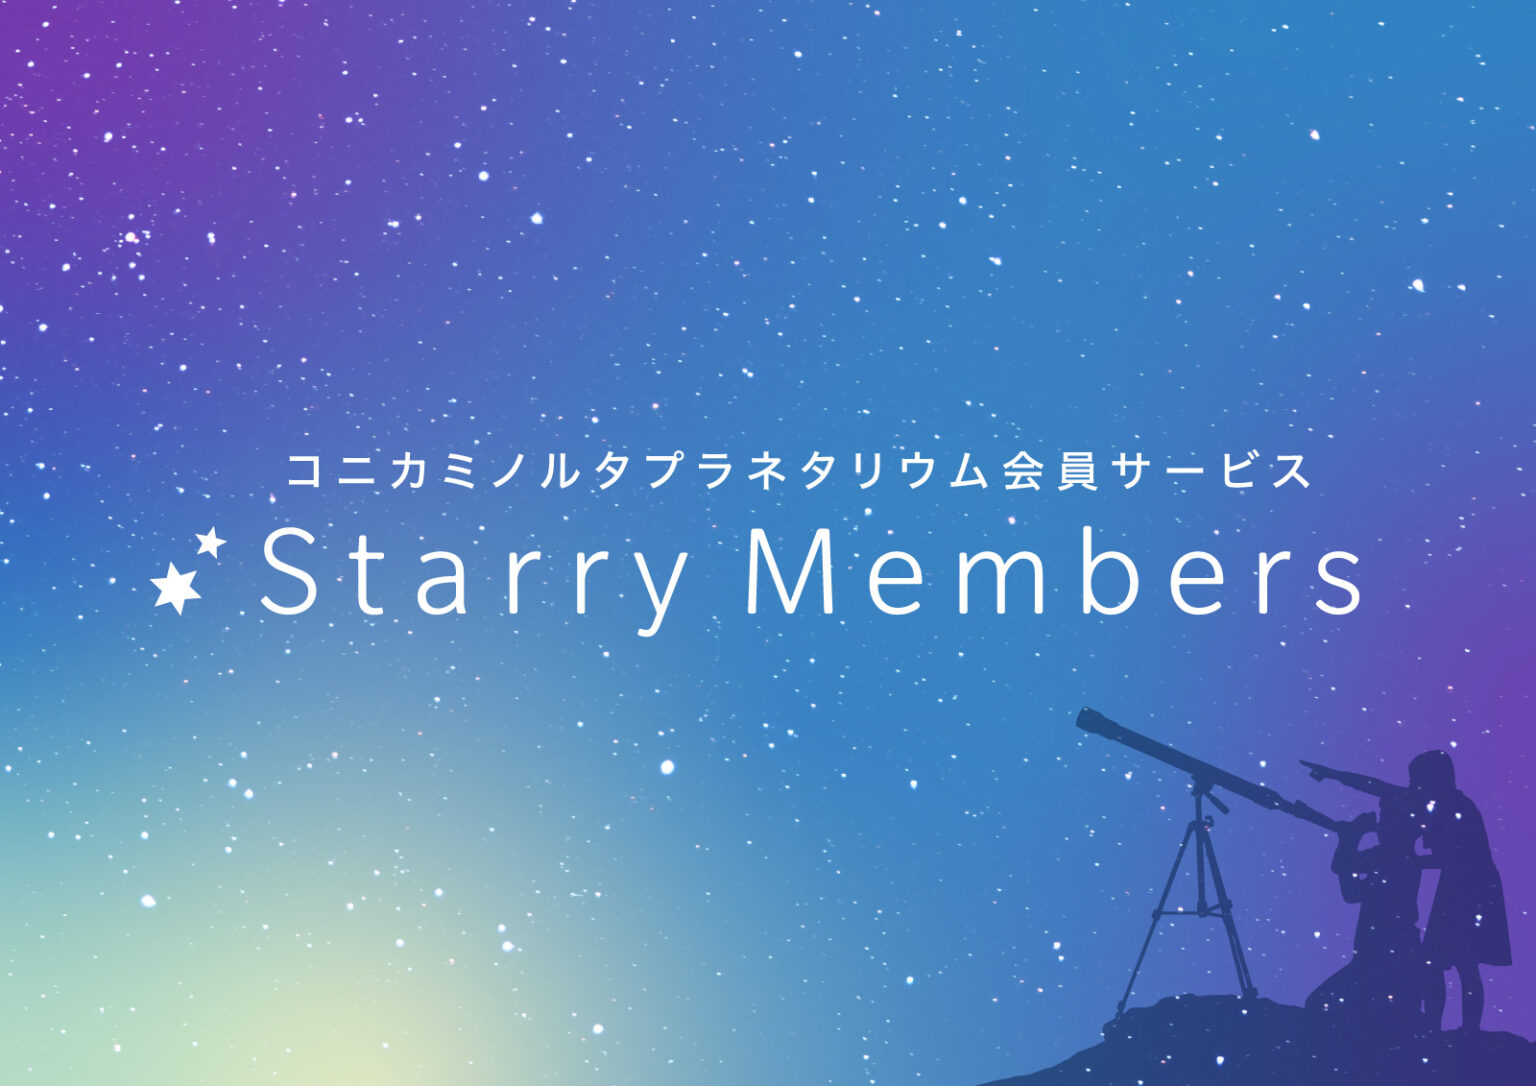 コニカミノルタプラネタリウム会員サービス「Starry Members」